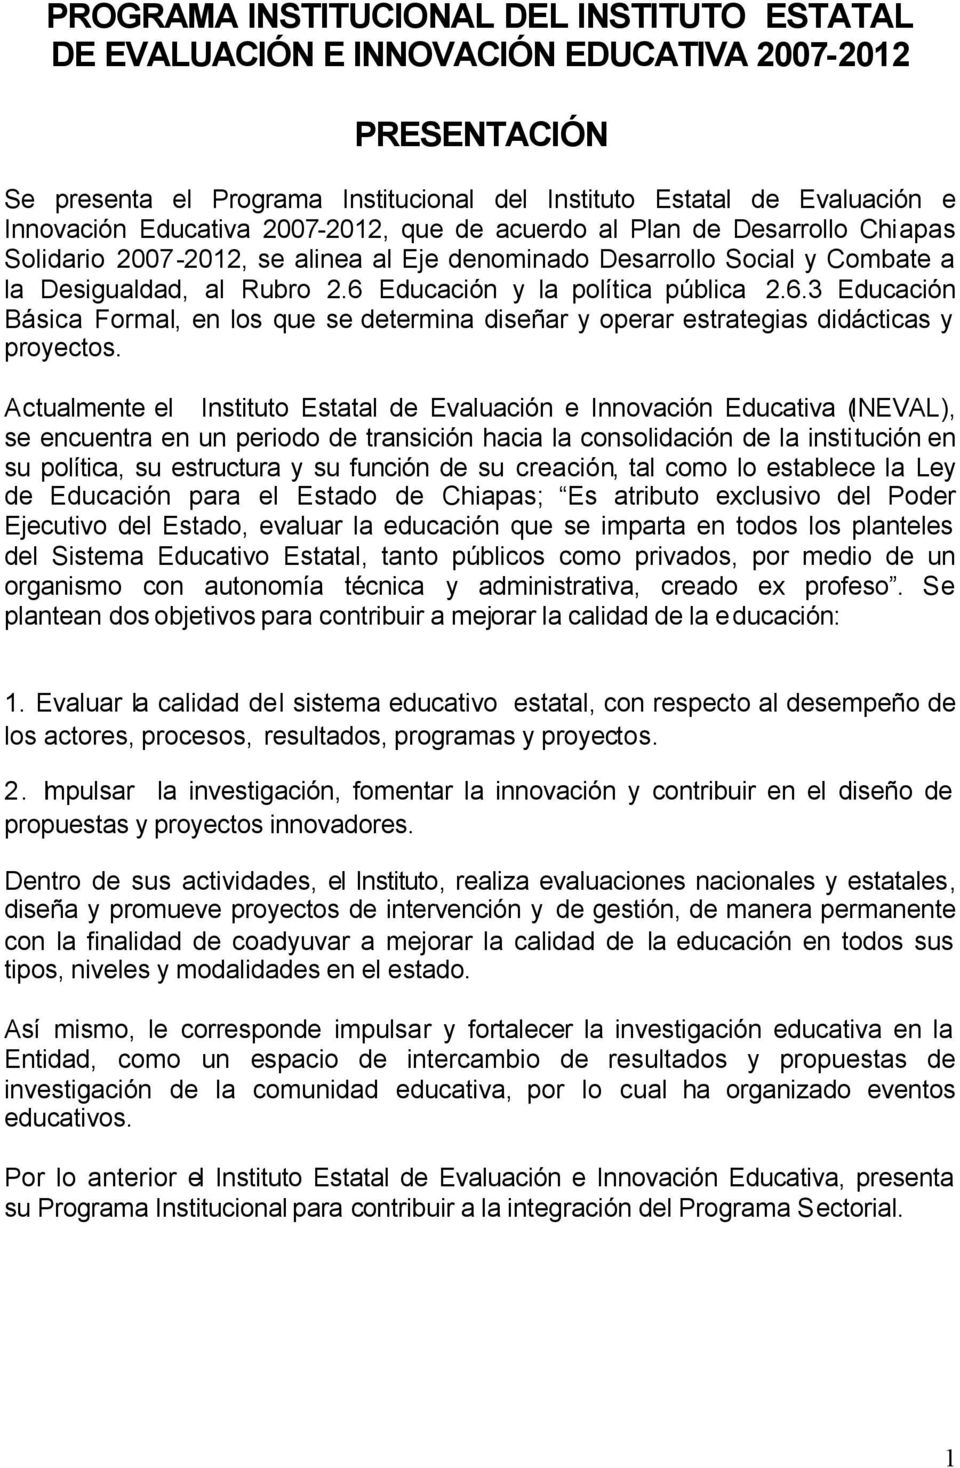 6 Educación y la política pública 2.6.3 Educación Básica Formal, en los que se determina diseñar y operar estrategias didácticas y proyectos.